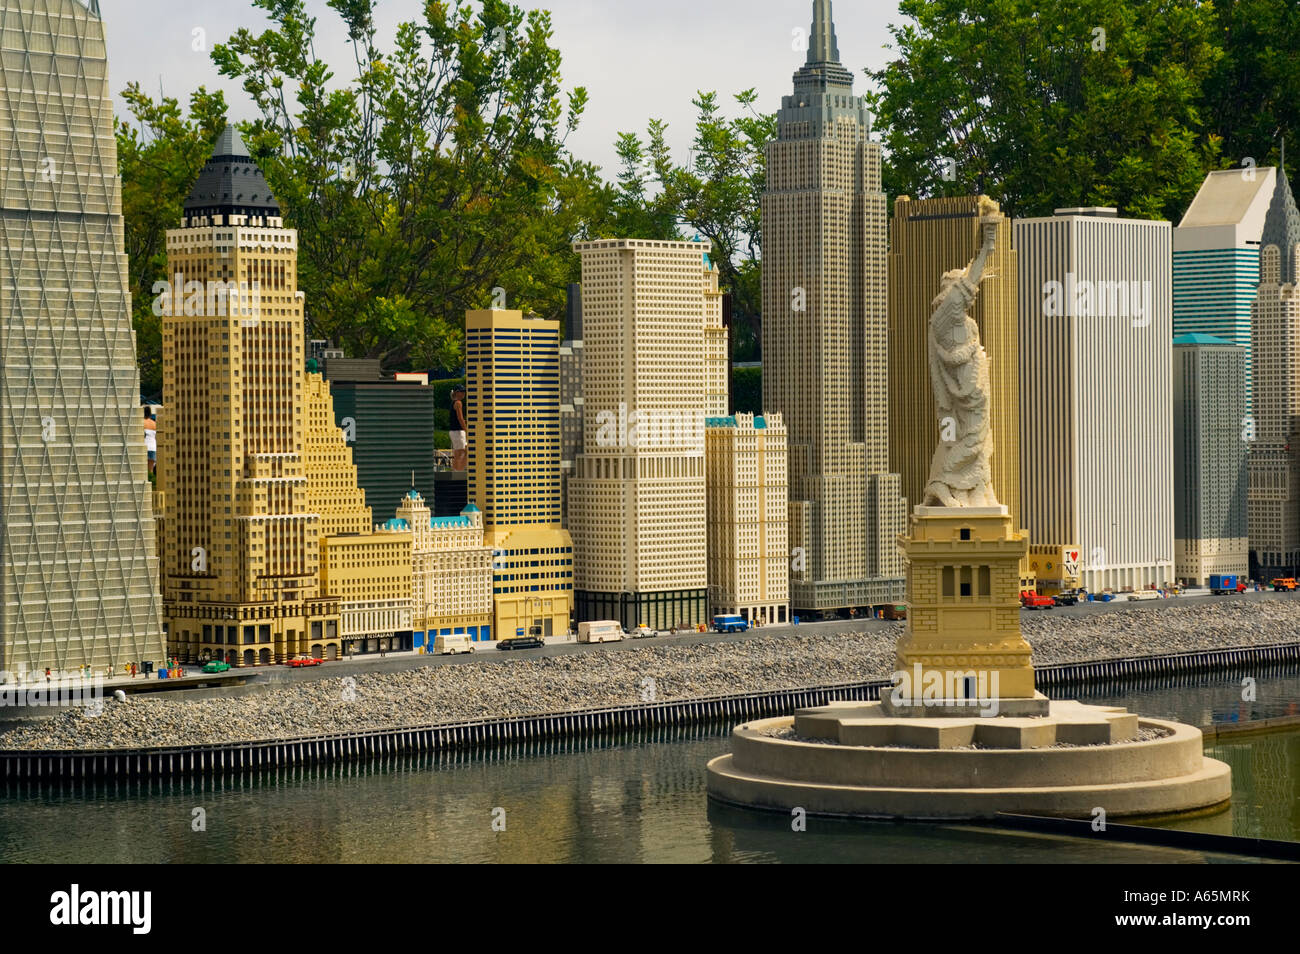 LEGO Miniaturmodell von New York City LegoLand Vergnügungsparks  Touristenattraktion in Carlsbad San Diego County in Kalifornien  Stockfotografie - Alamy